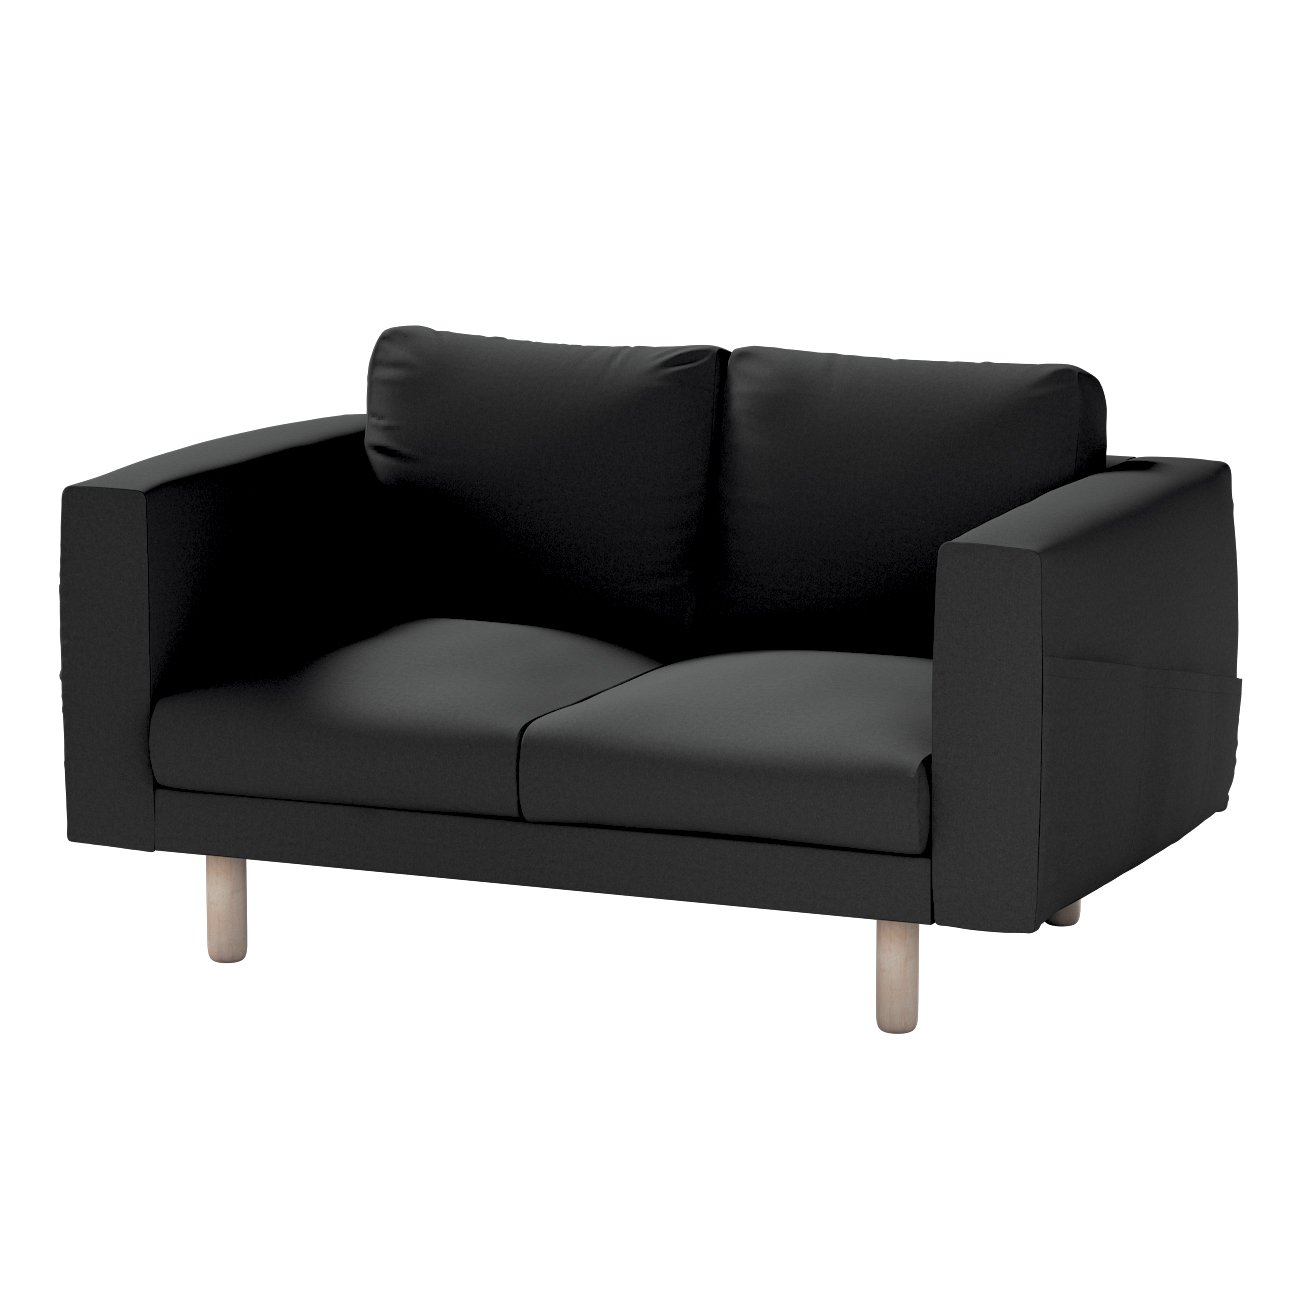 Bezug für Norsborg 2-Sitzer Sofa, schwarz, Norsborg 2-Sitzer Sofabezug, Liv günstig online kaufen